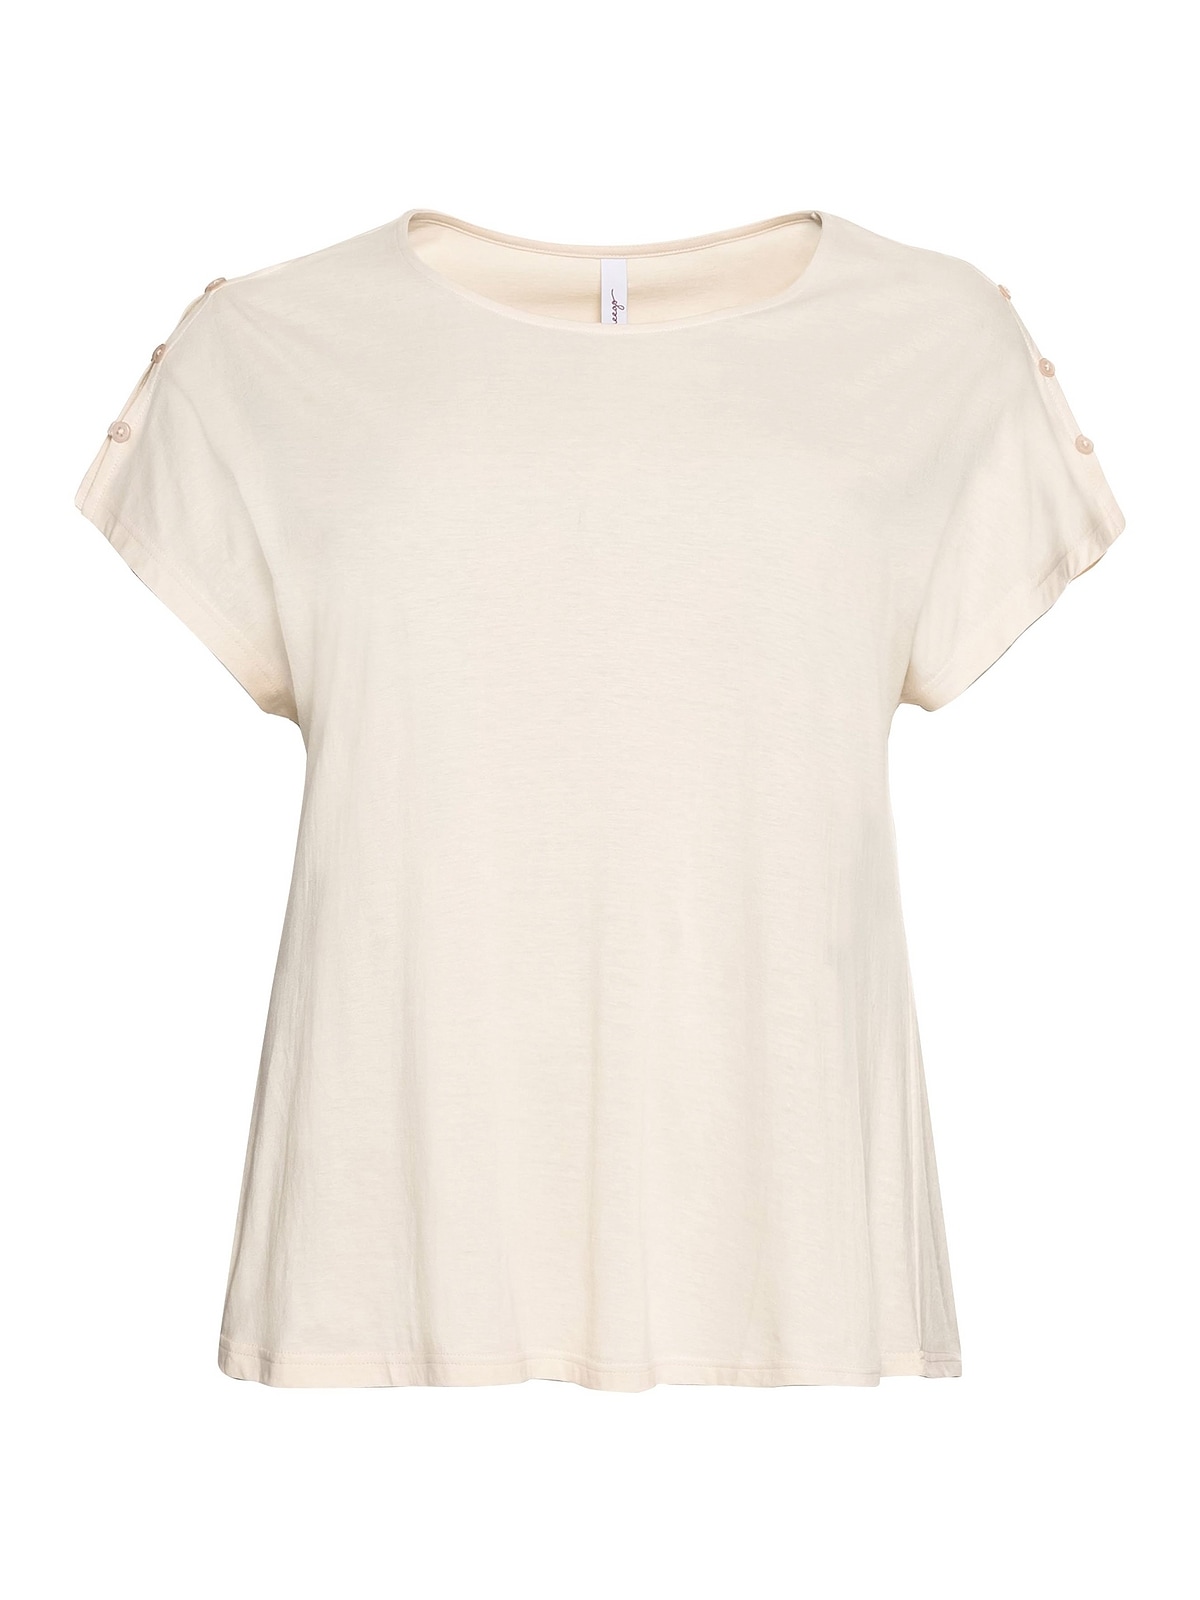 Sheego T-Shirt leichter Schulterpartie, für offener kaufen »Große Größen«, BAUR in A-Linie mit 